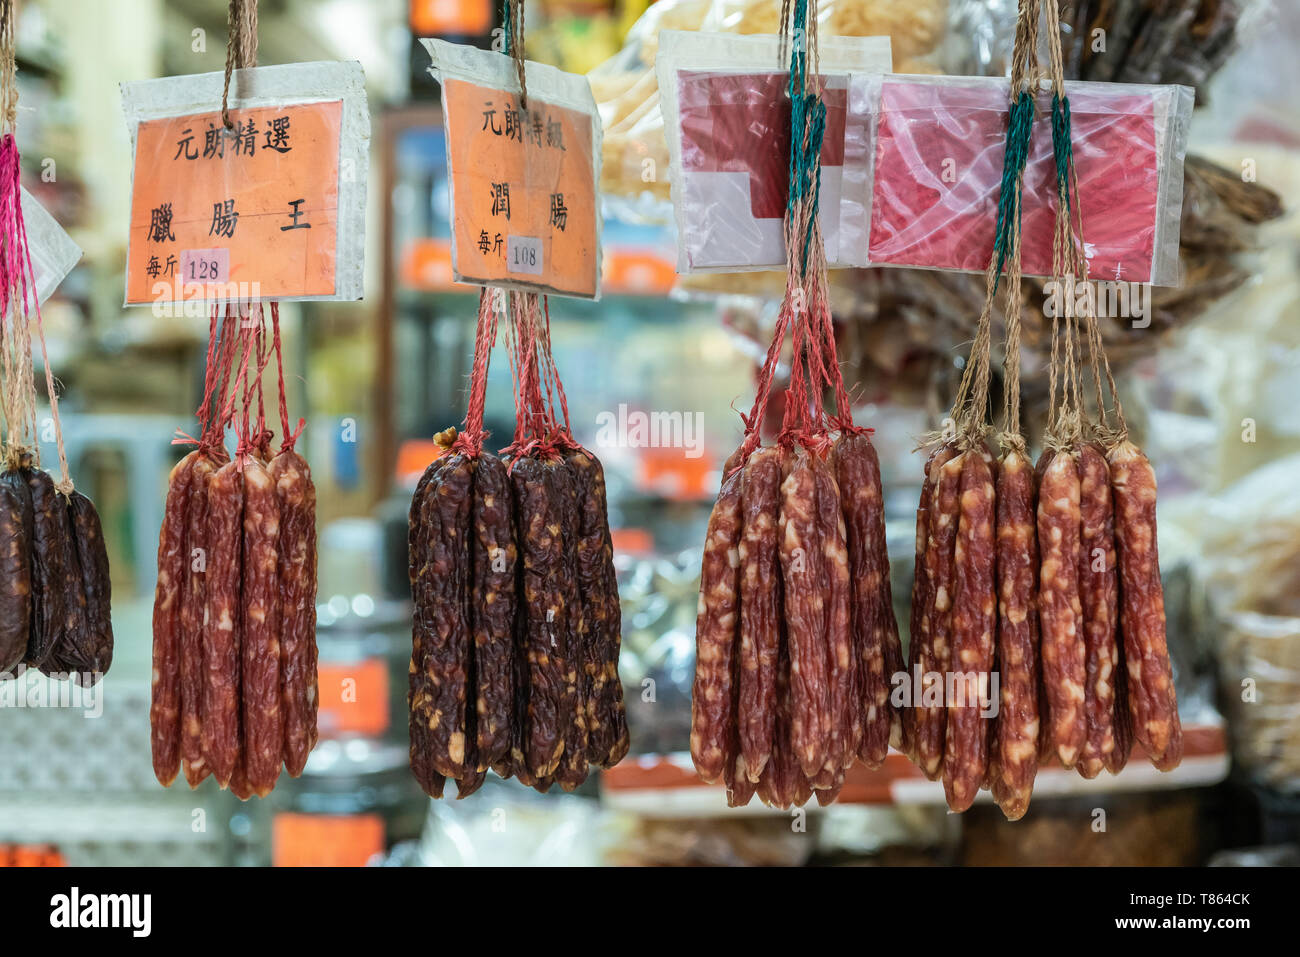 Hong Kong, Cina - 8 Marzo 2019: Mercato Tai Po in un nuovo territorio. Primo piano della selezione di salsiccia secca si blocca nella finestra aperta del negozio. Foto Stock